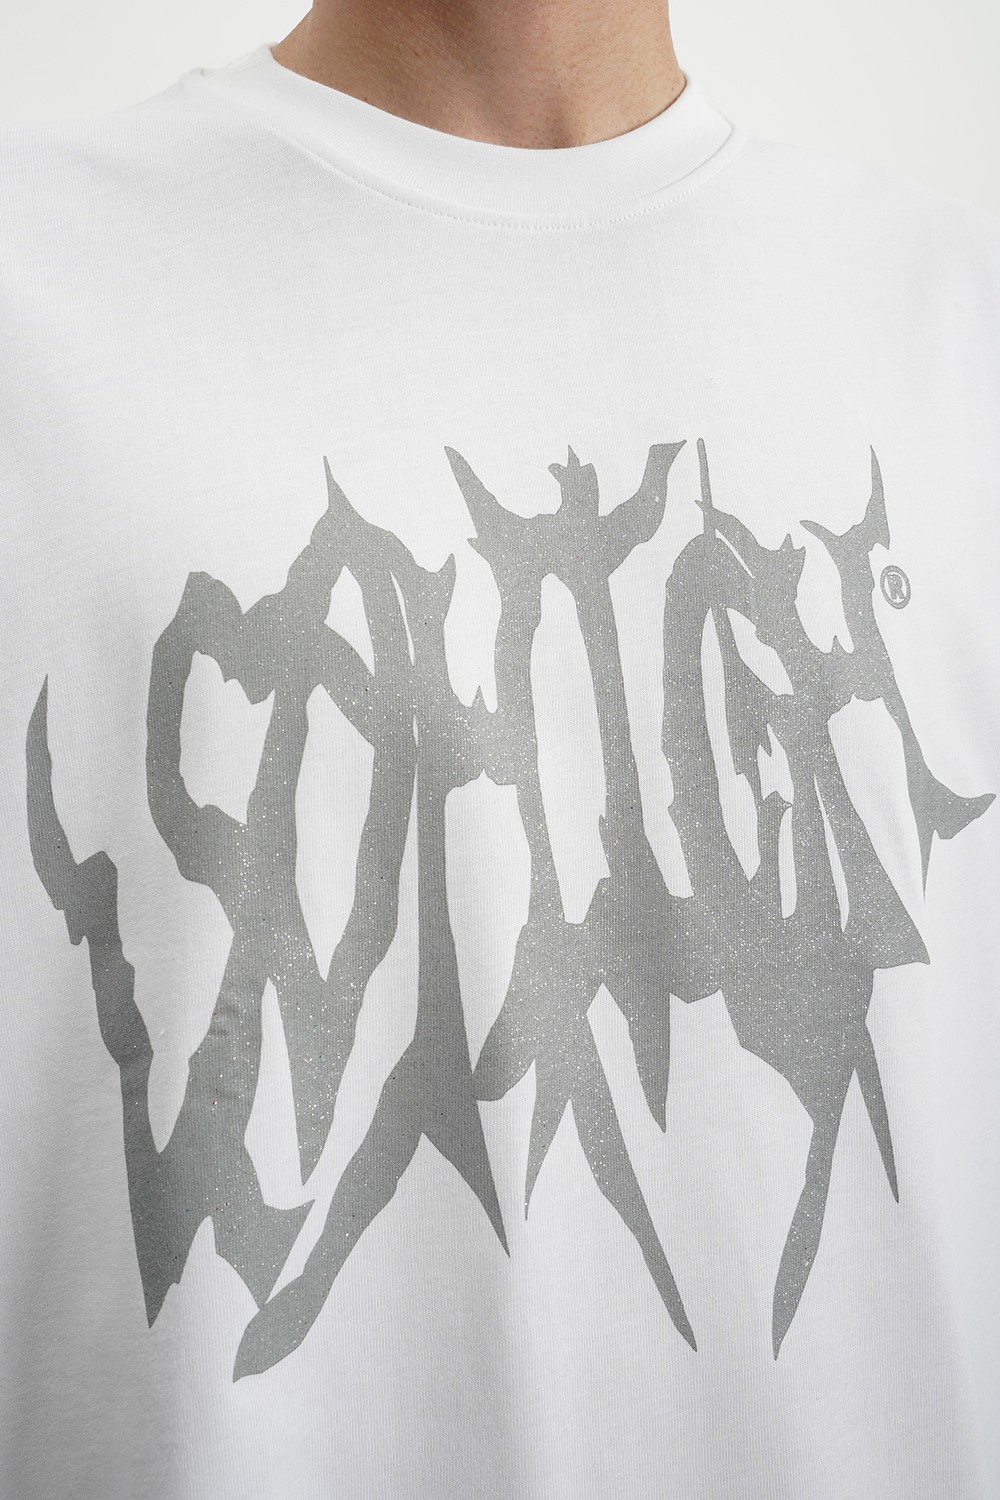 Sohigh Glitter Crew Logo T-Shirt (SHT-2)